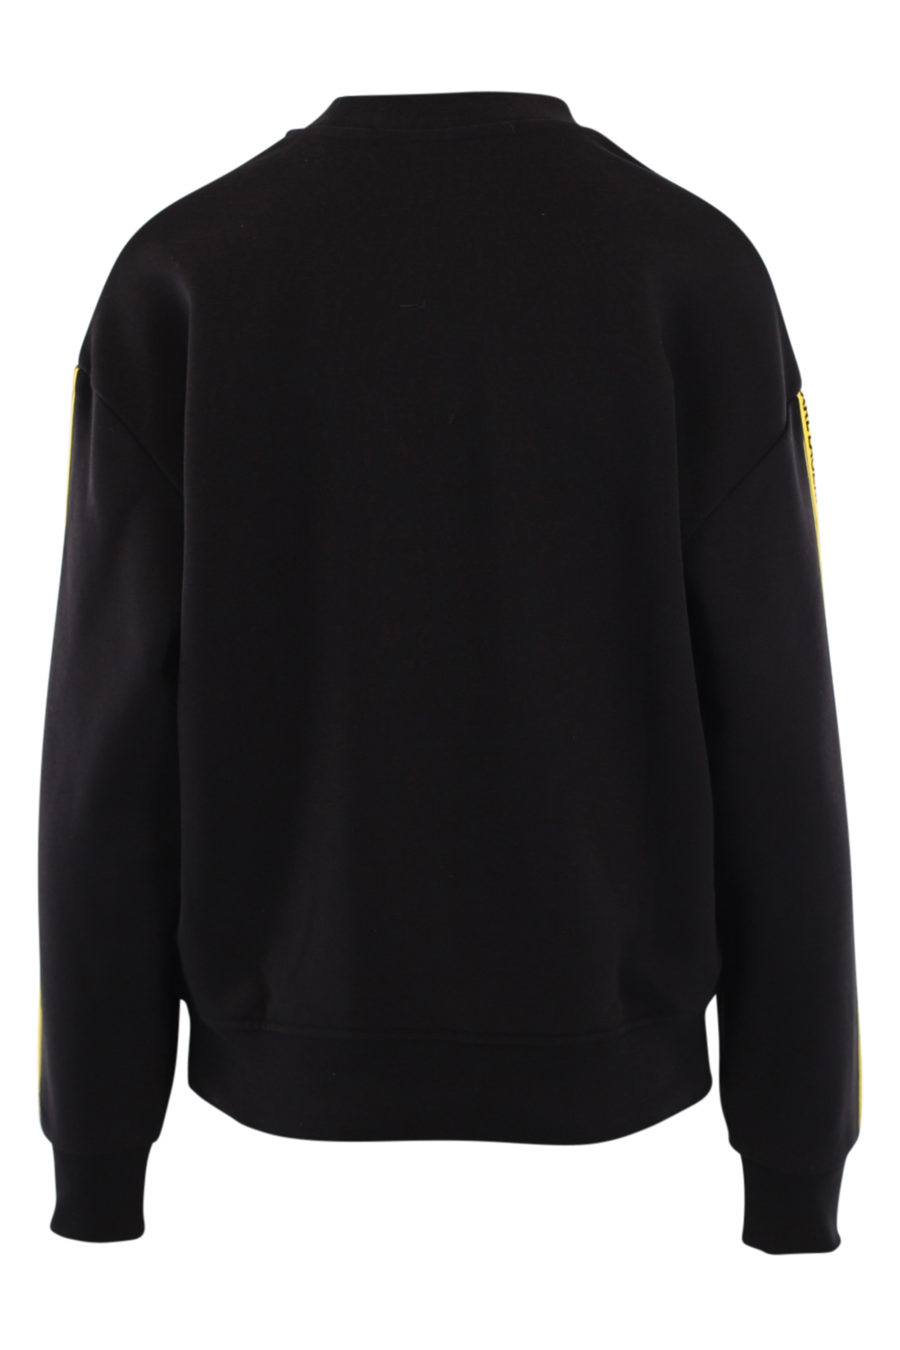 Schwarzes Unisex-Sweatshirt mit gelbem Bandlogo und "Smiley" - IMG 0889